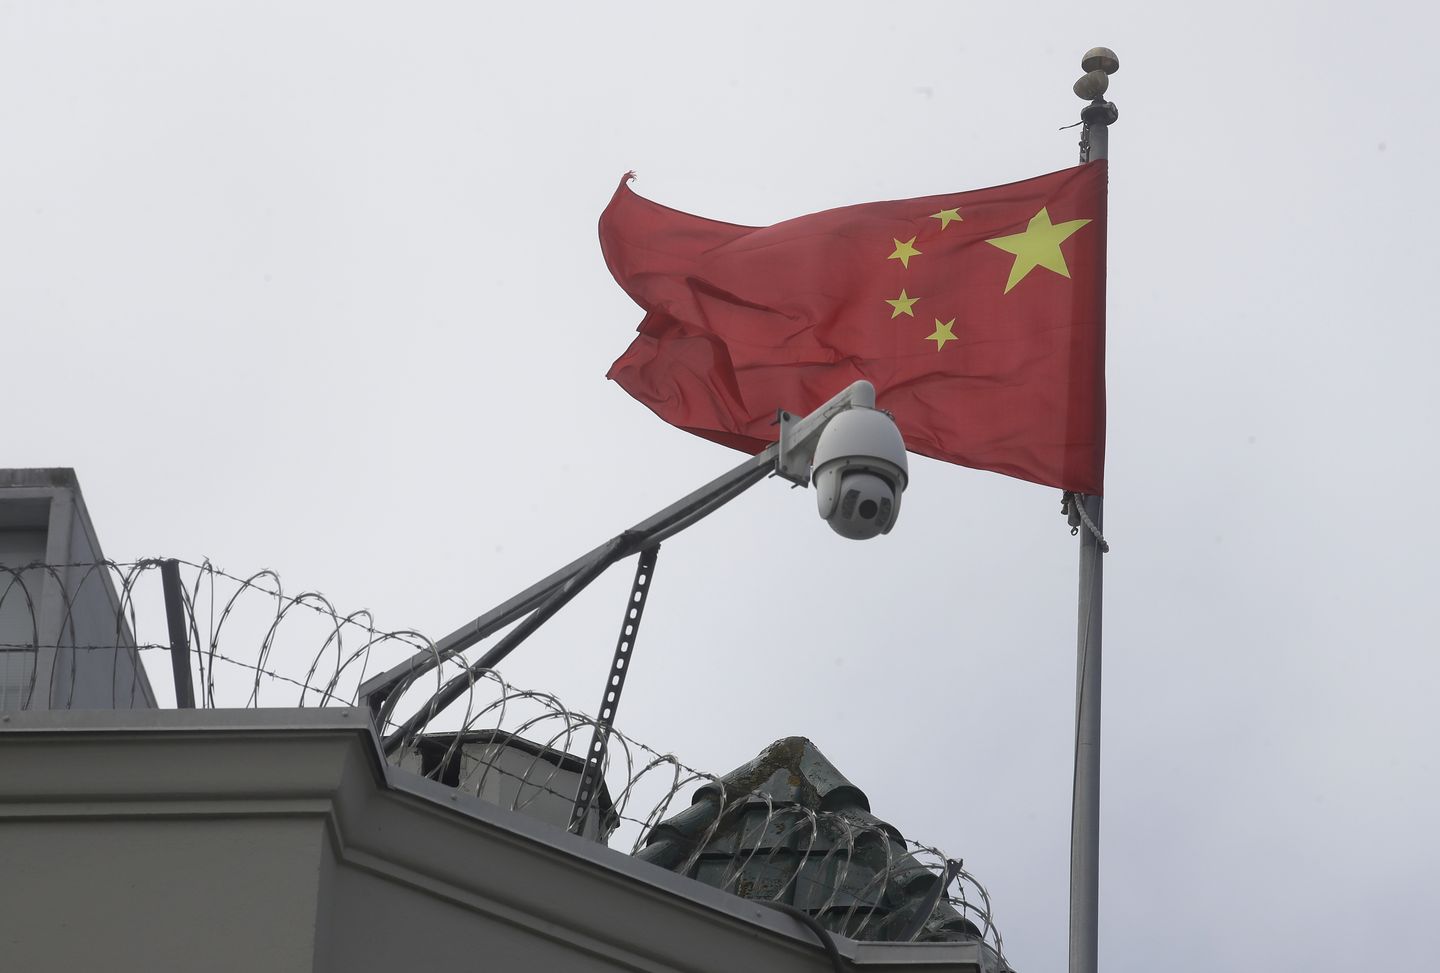 San Francisco, Çin komünizmini ulusun kuruluşunu onurlandırmak için bayrak dikerek kutluyor